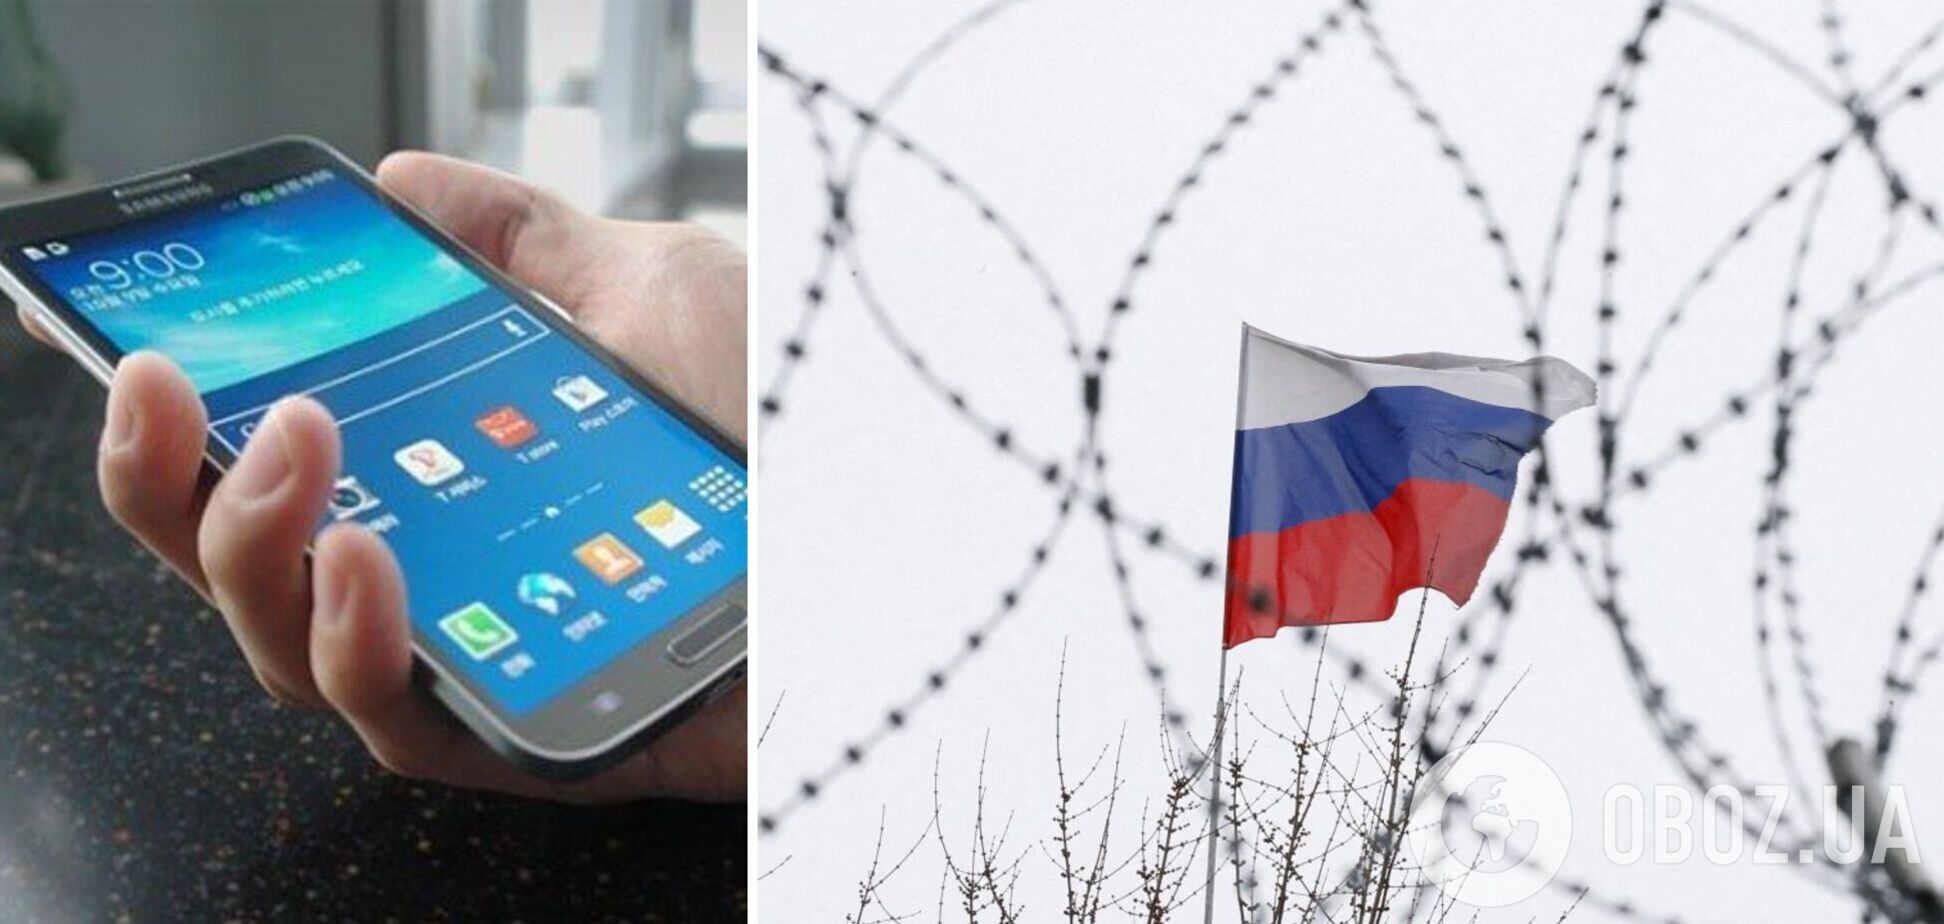 В Росси не могут активировать контрафактные смартфоны Samsung